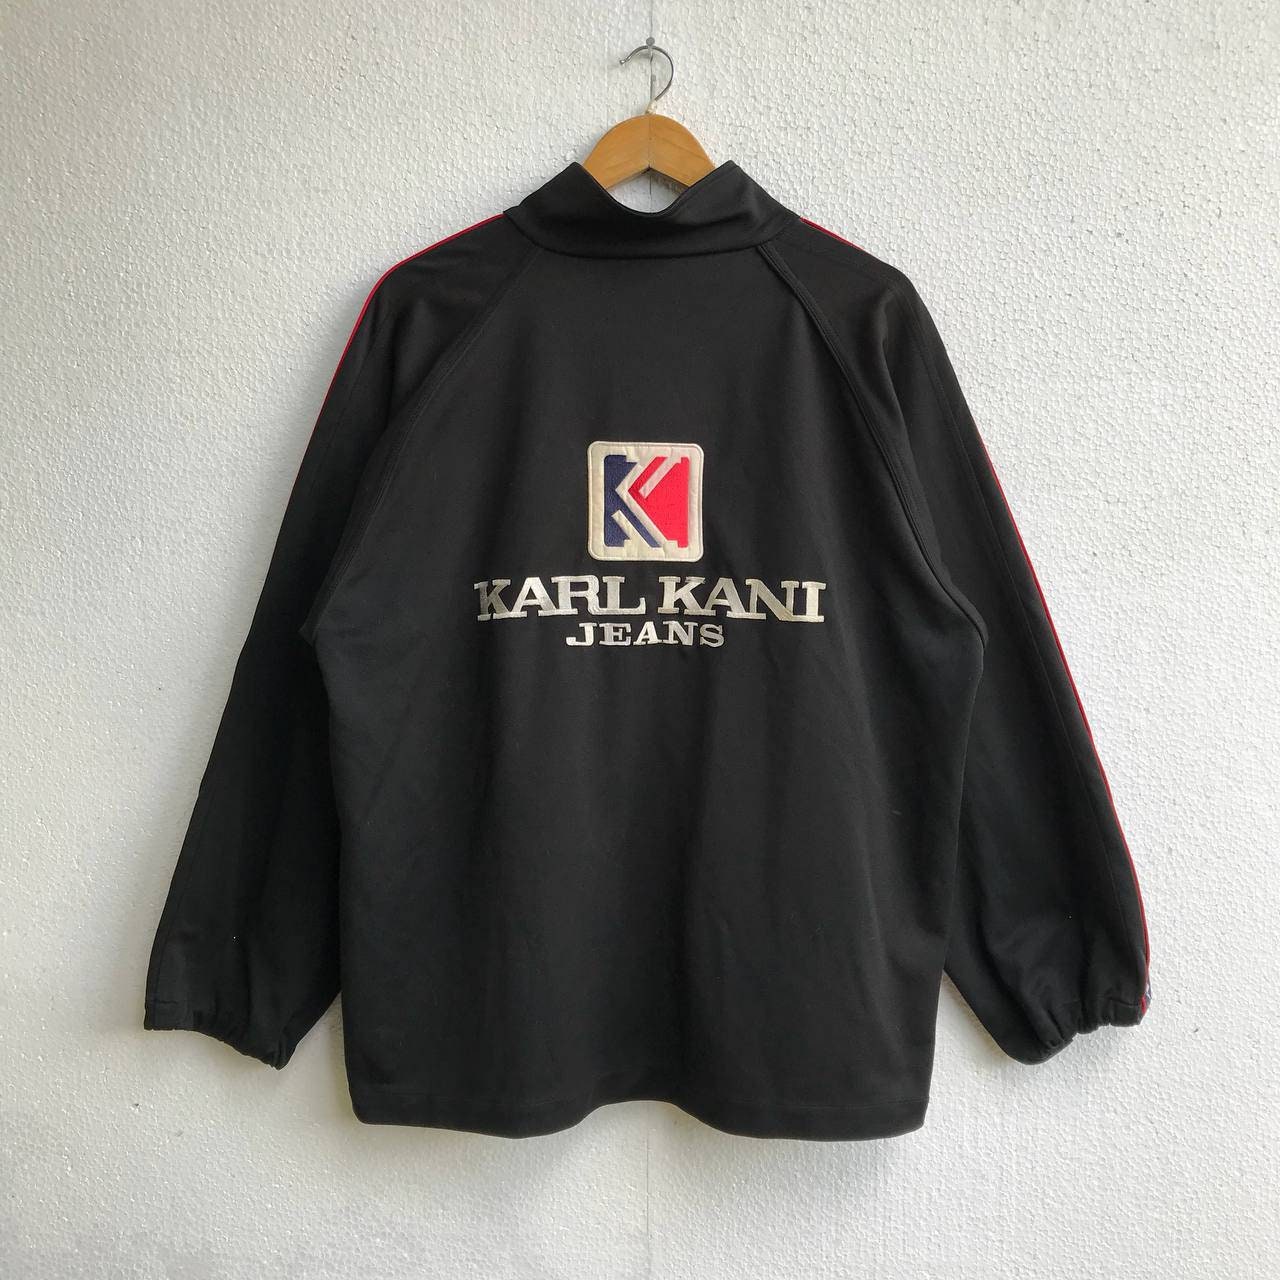 Karl Kani Karl Kani vintage big logo red blue rap tee sweatshirt 